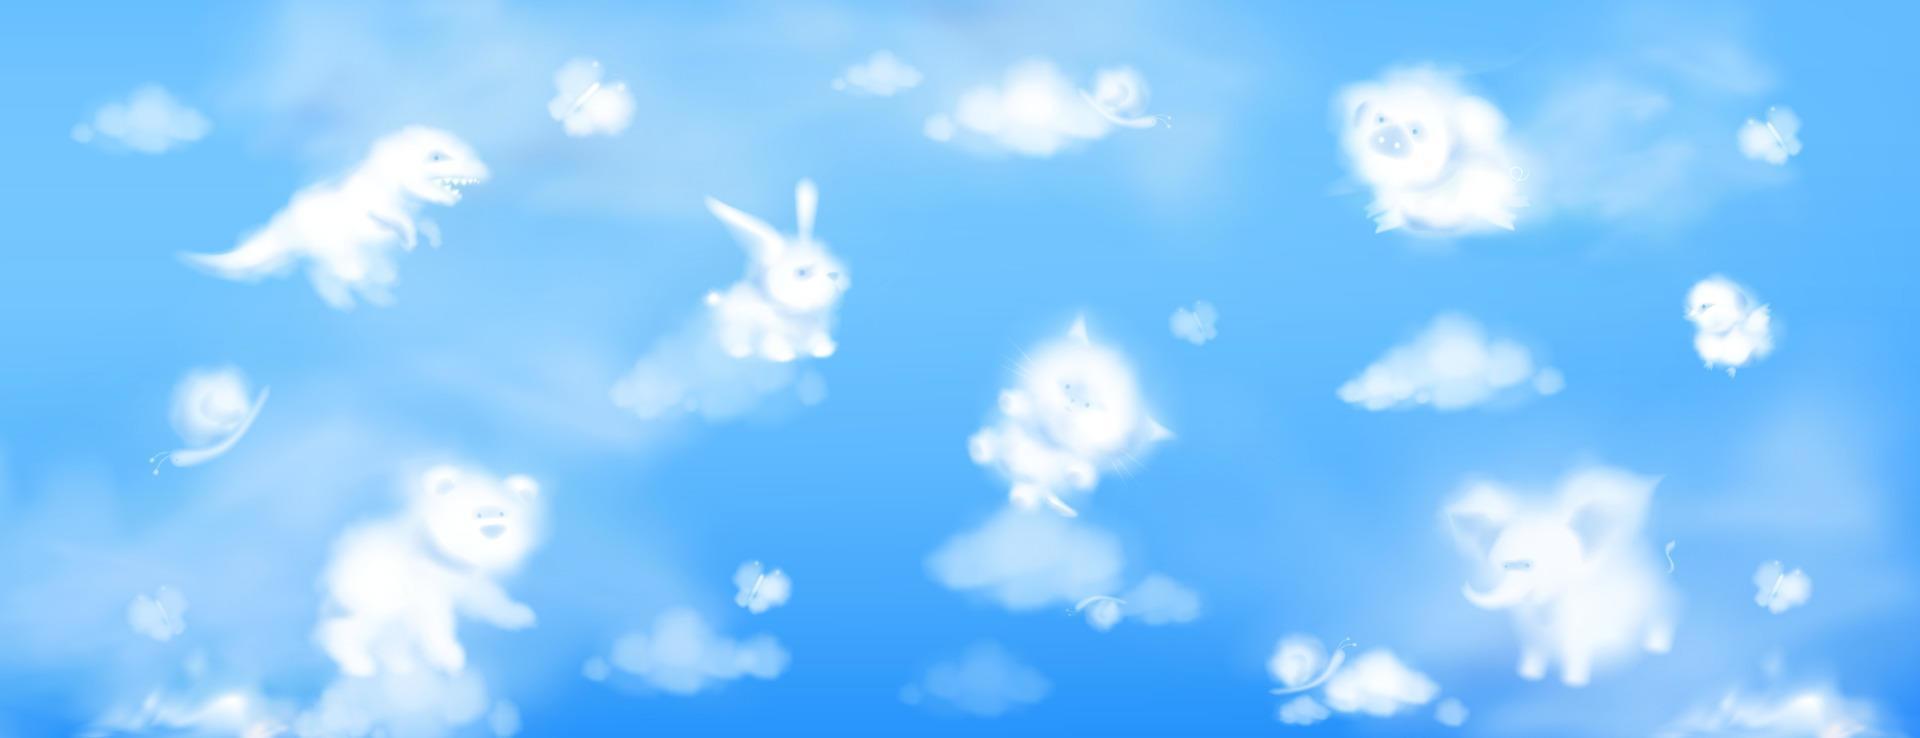 weiße wolken in form von niedlichen tieren im himmel vektor